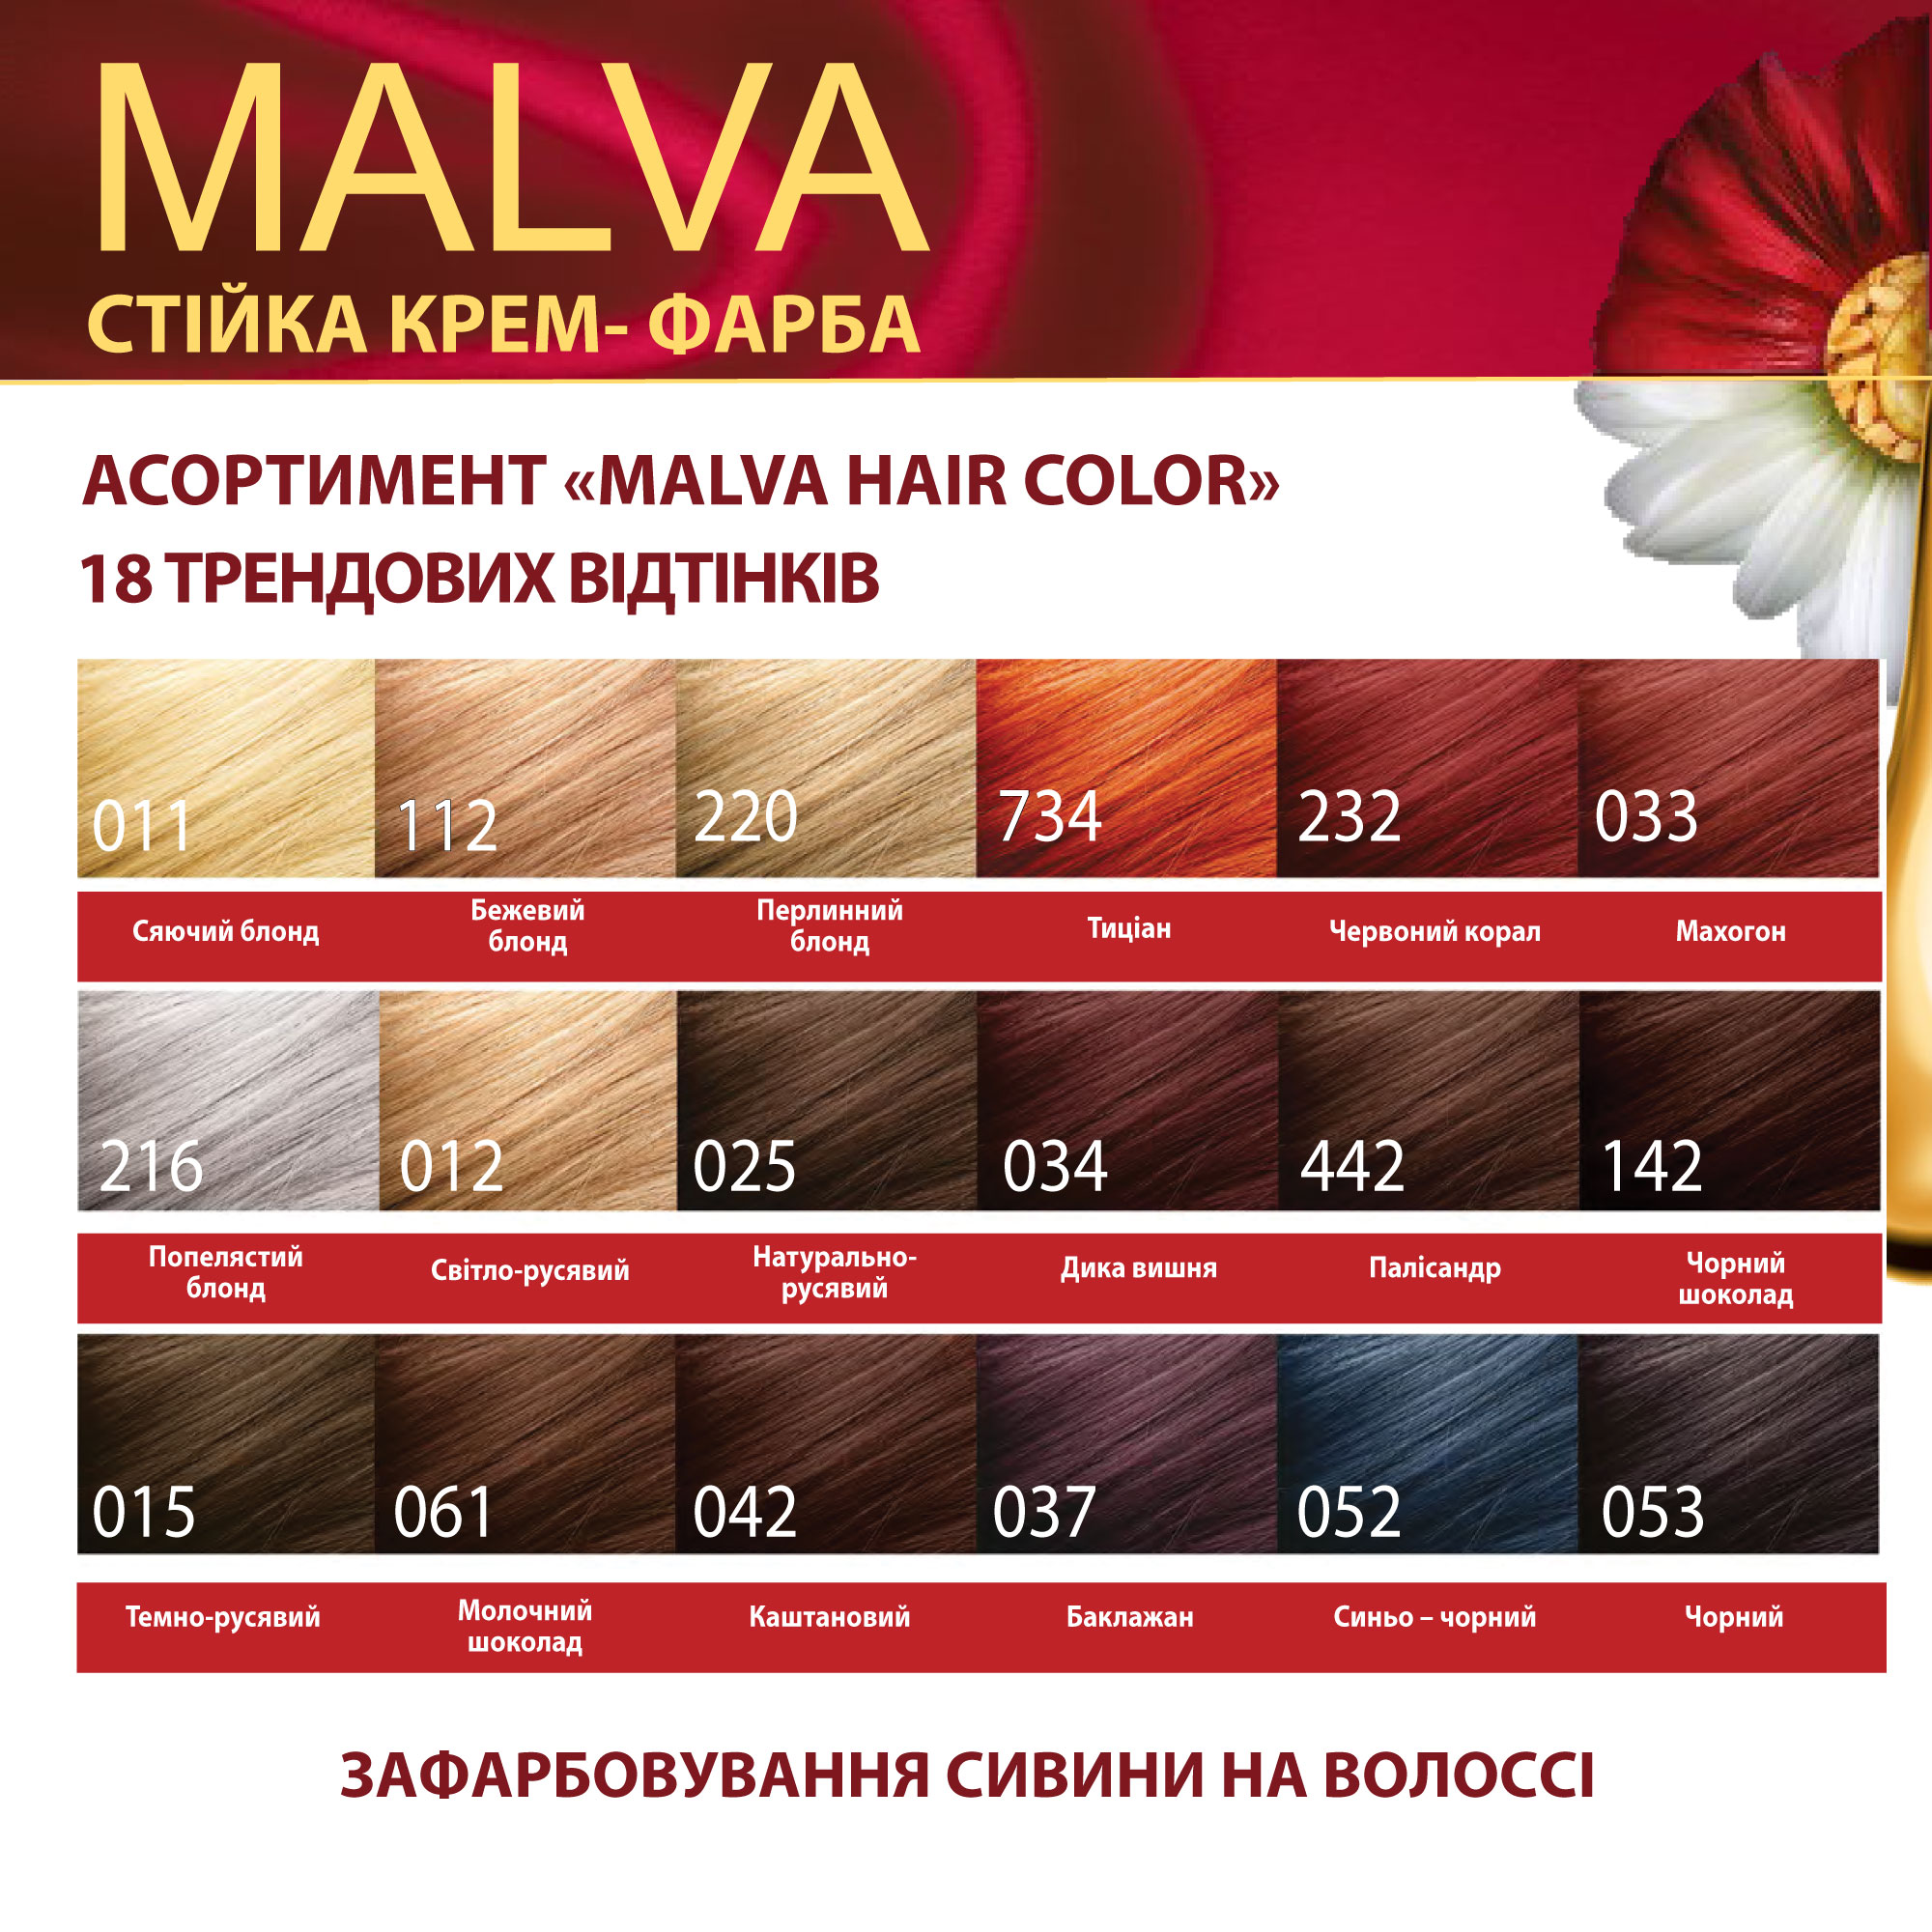 Крем-краска для волос Acme Color Malva, оттенок 011 (Сияющий блонд), 95 мл - фото 6